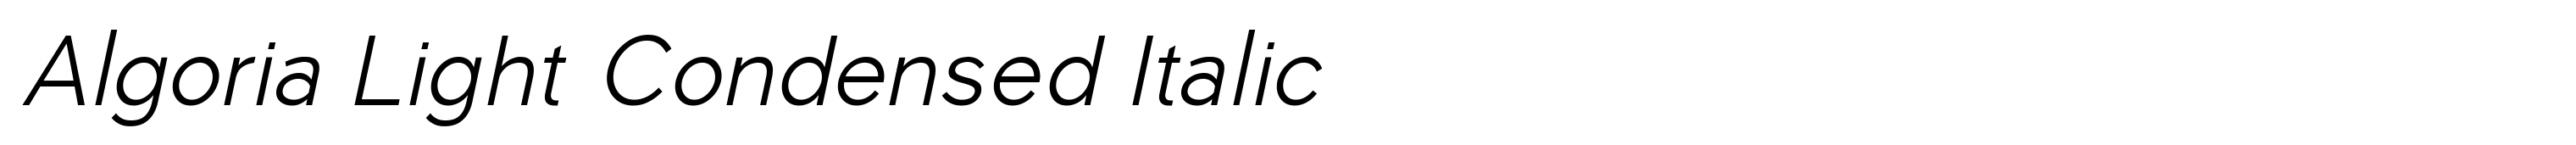 Algoria Light Condensed Italic